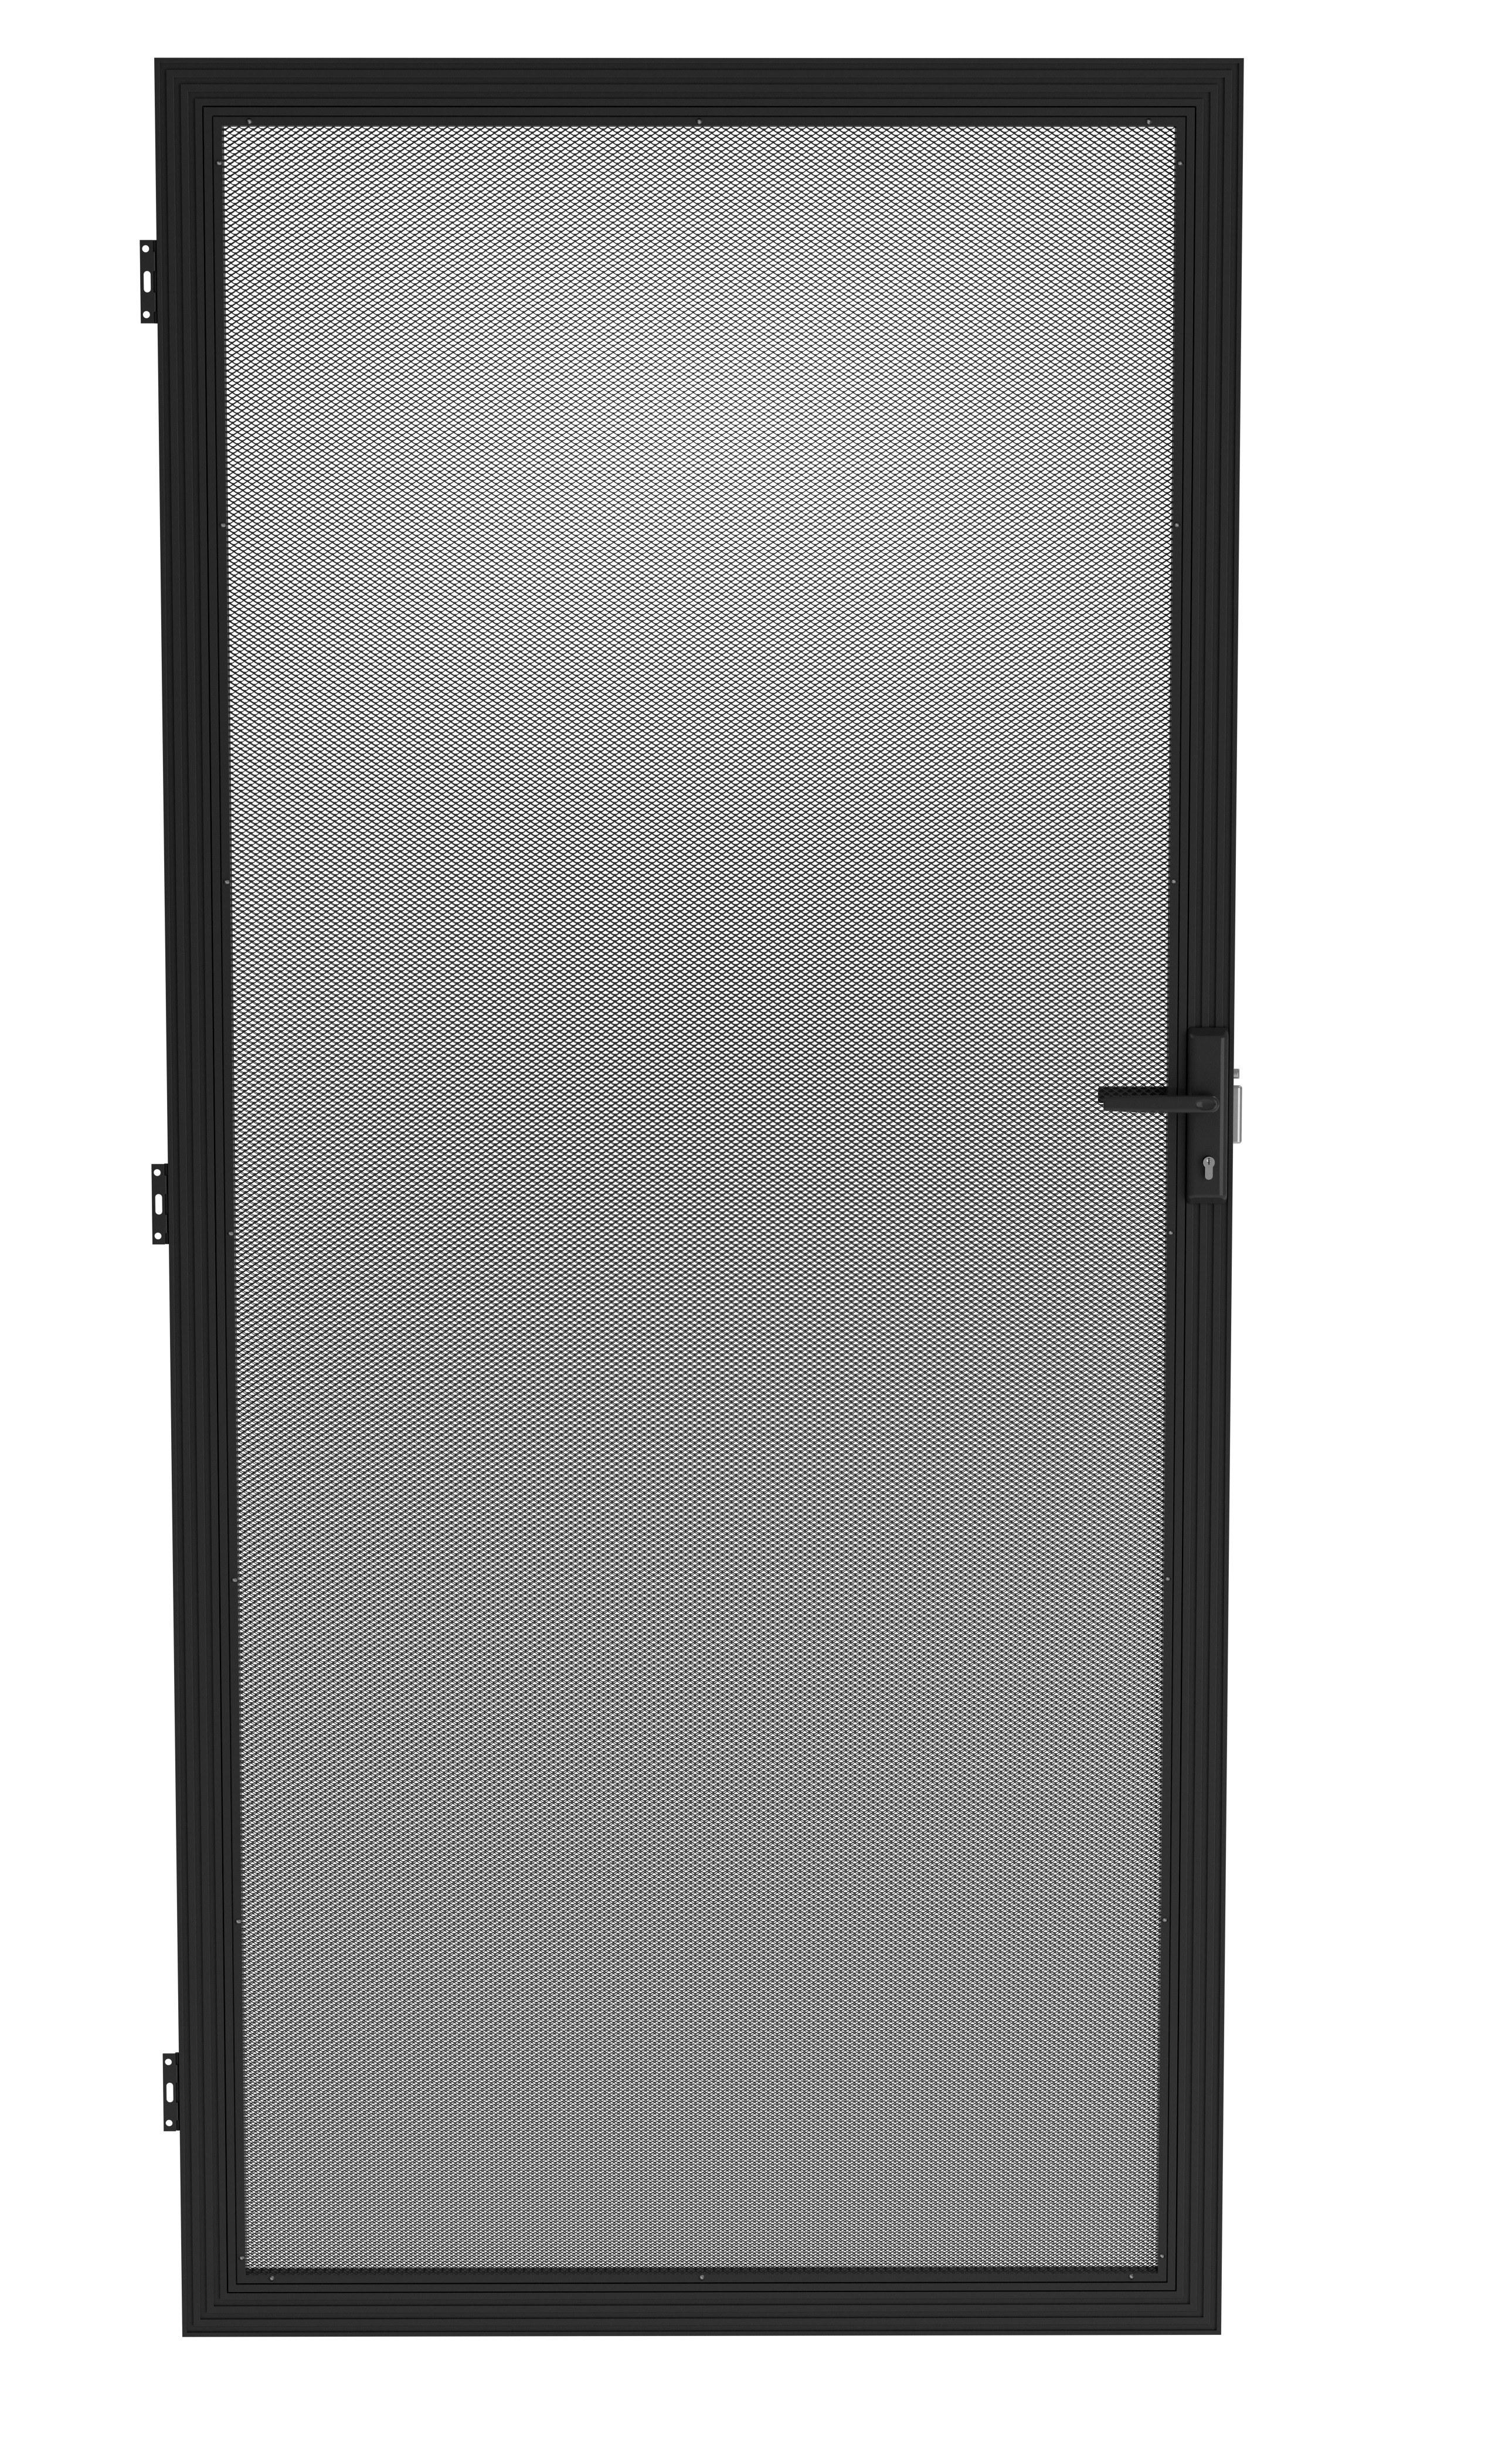 Barrier door, Security Door, 2032 x 813mm. Black Aluminium